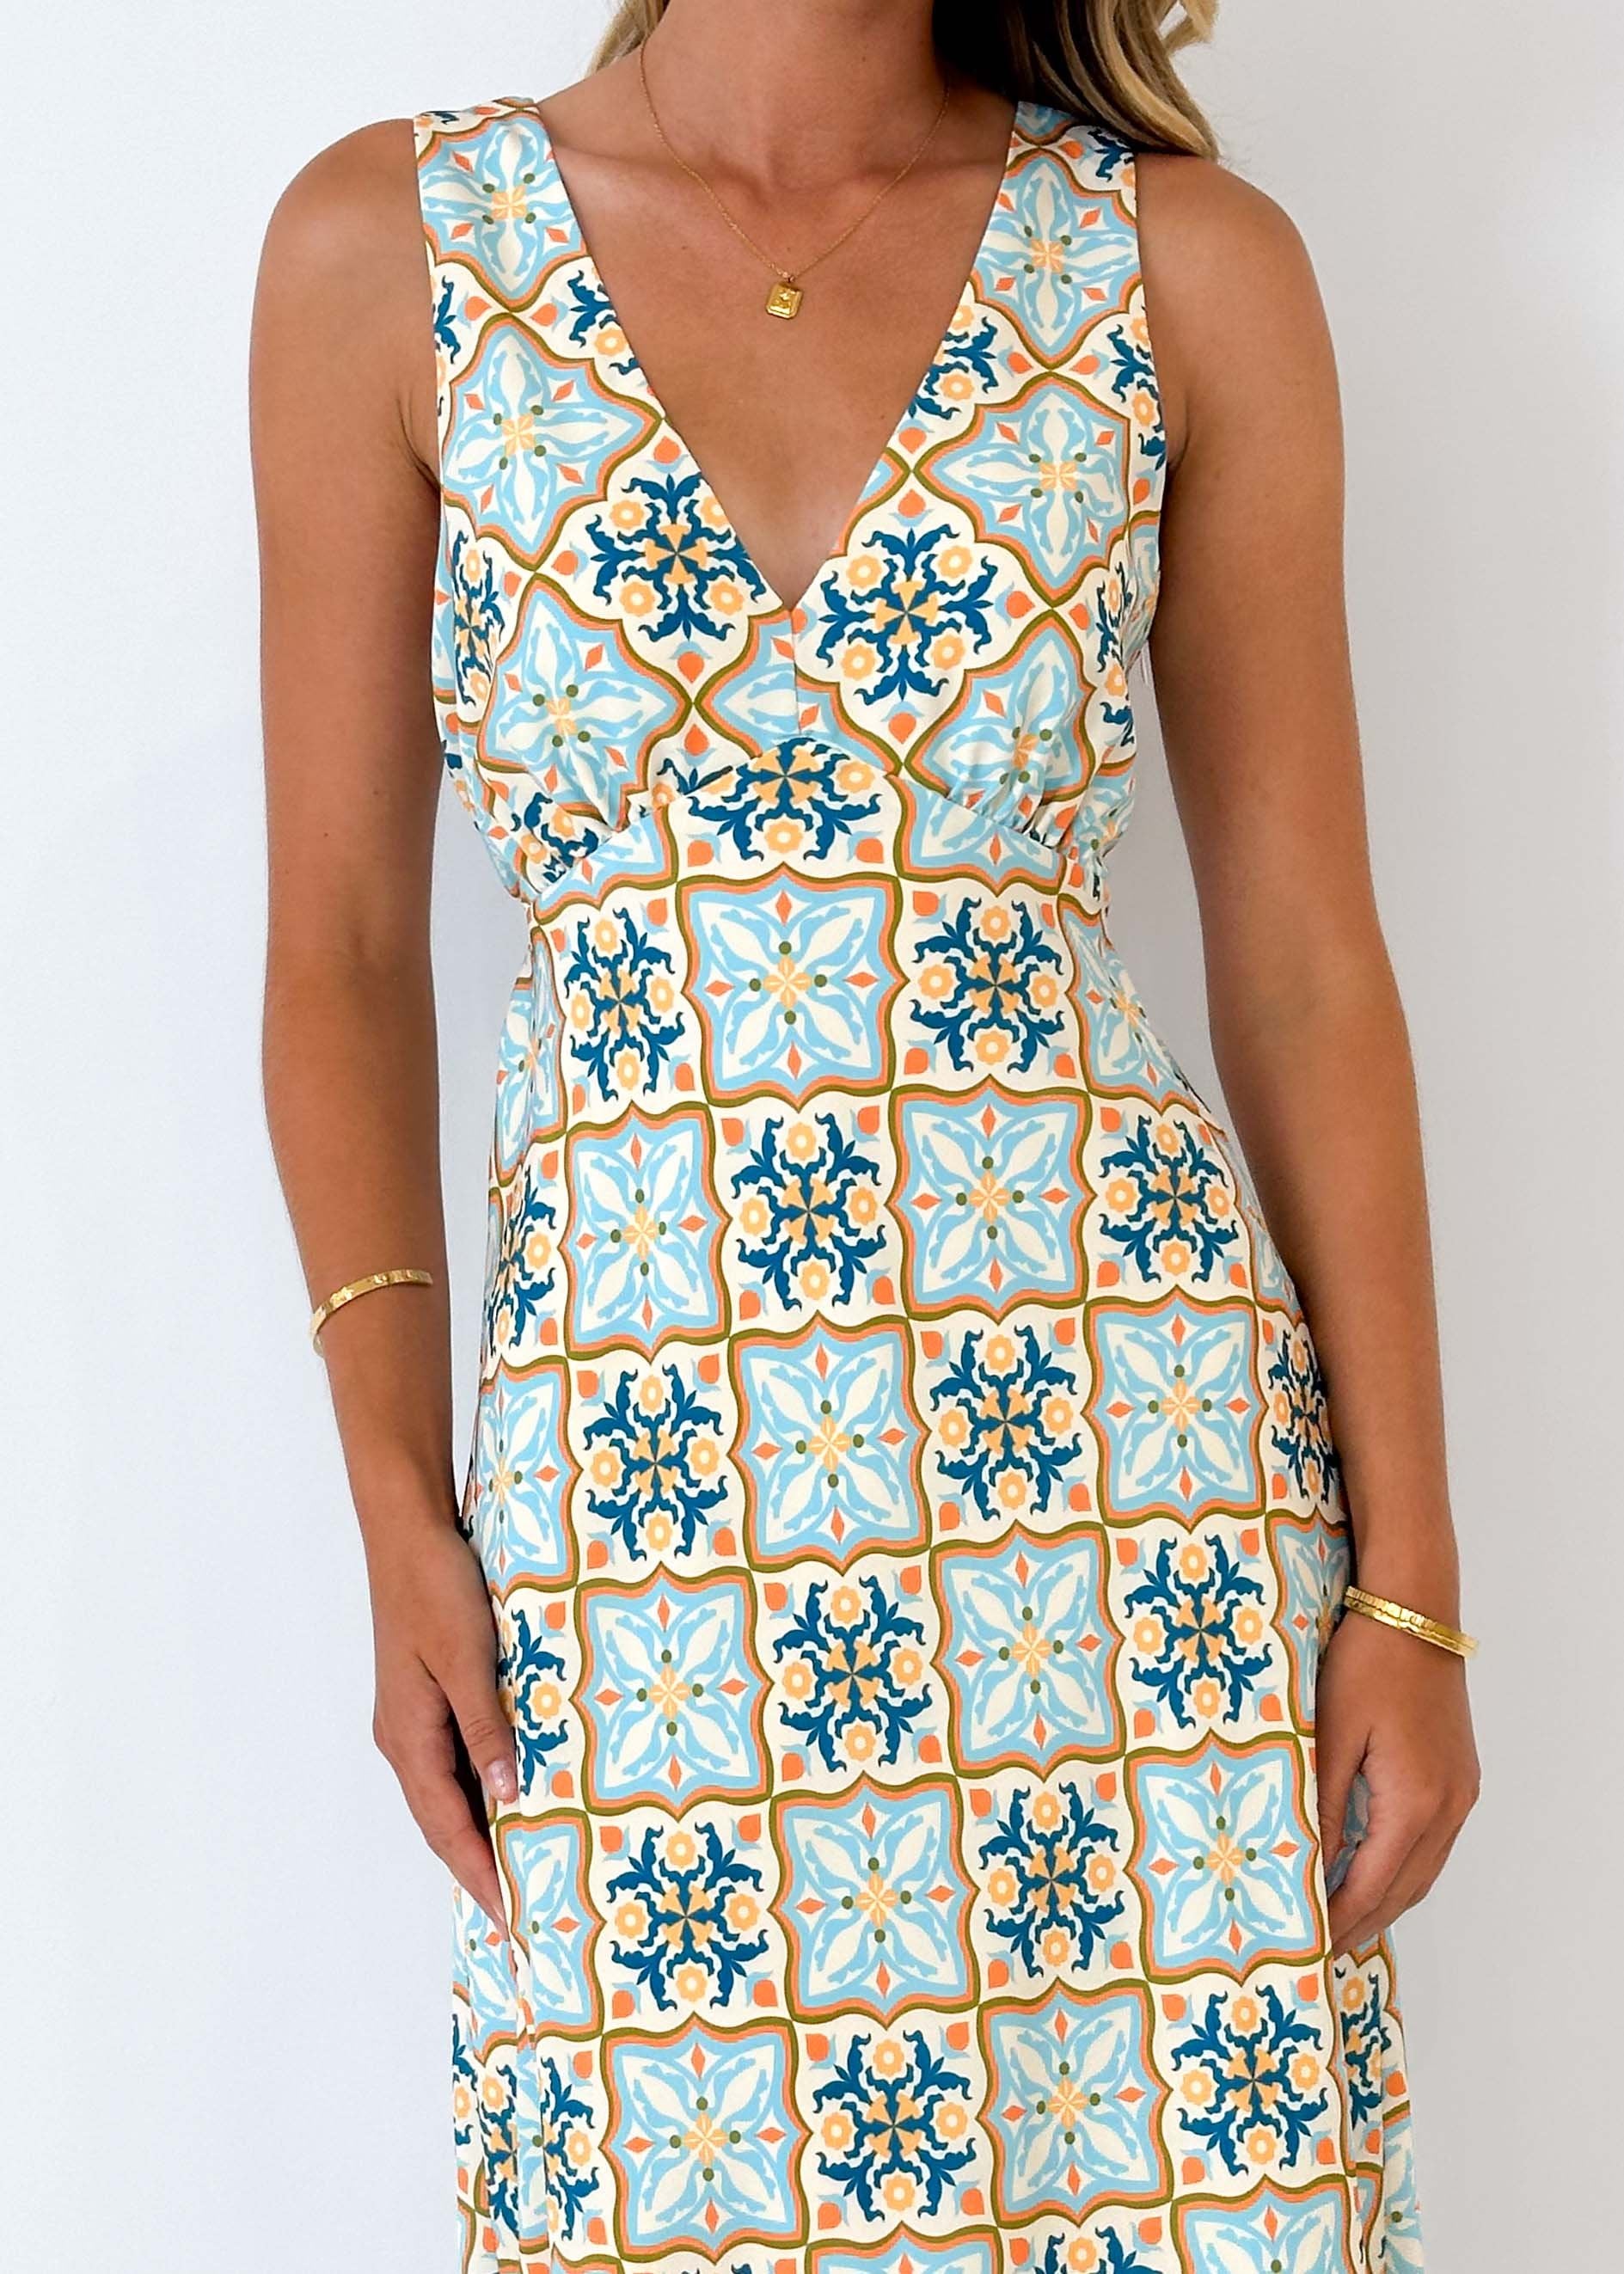 Caseo Maxi Dress - Moroccan Tile